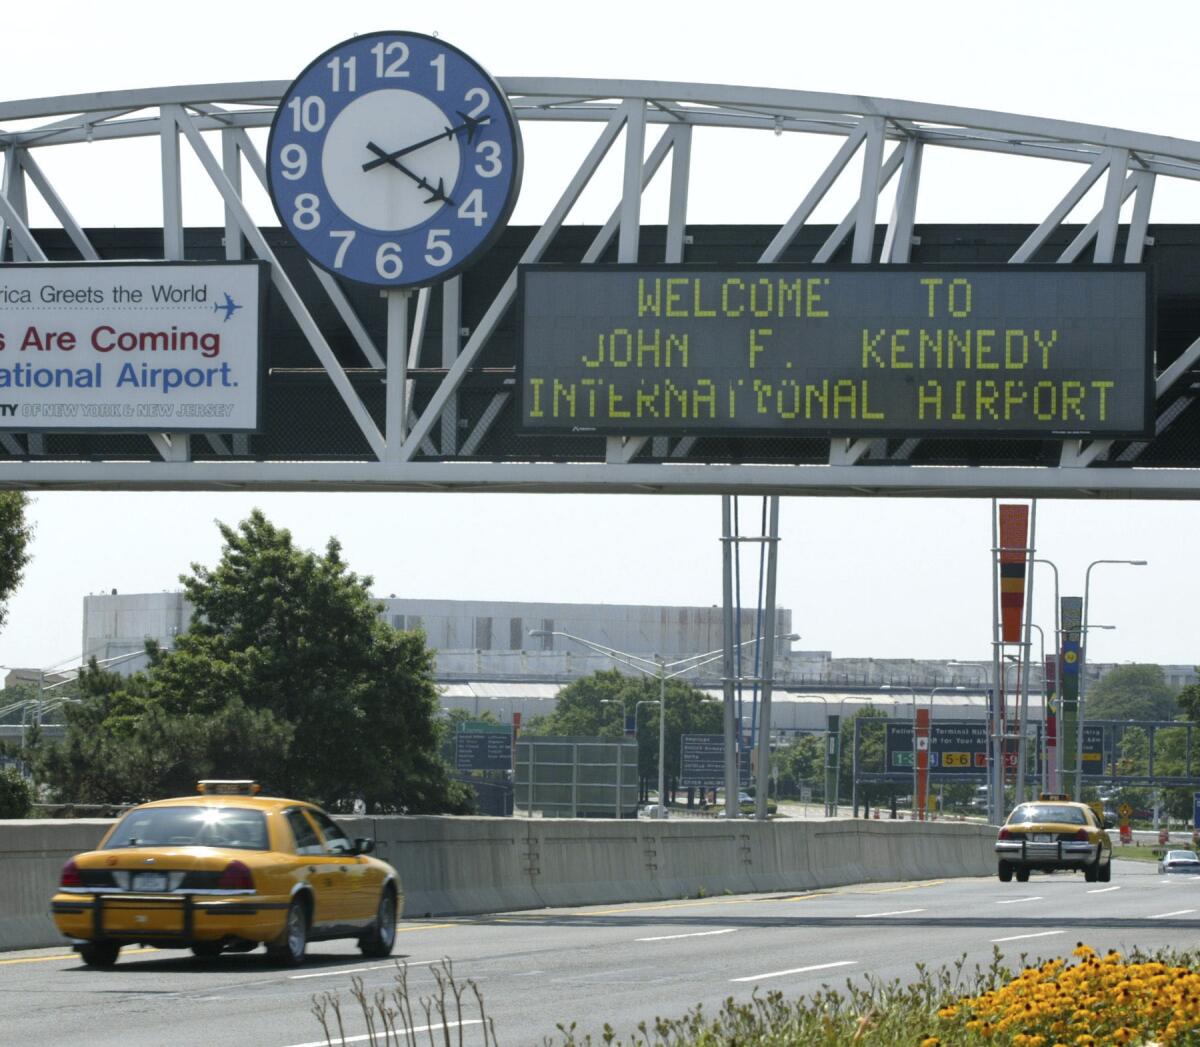 ARCHIVO - Esta fotografía muestra la vía de acceso al Aeropuerto Internacional John F. Kennedy el 15 de agosto de 2003